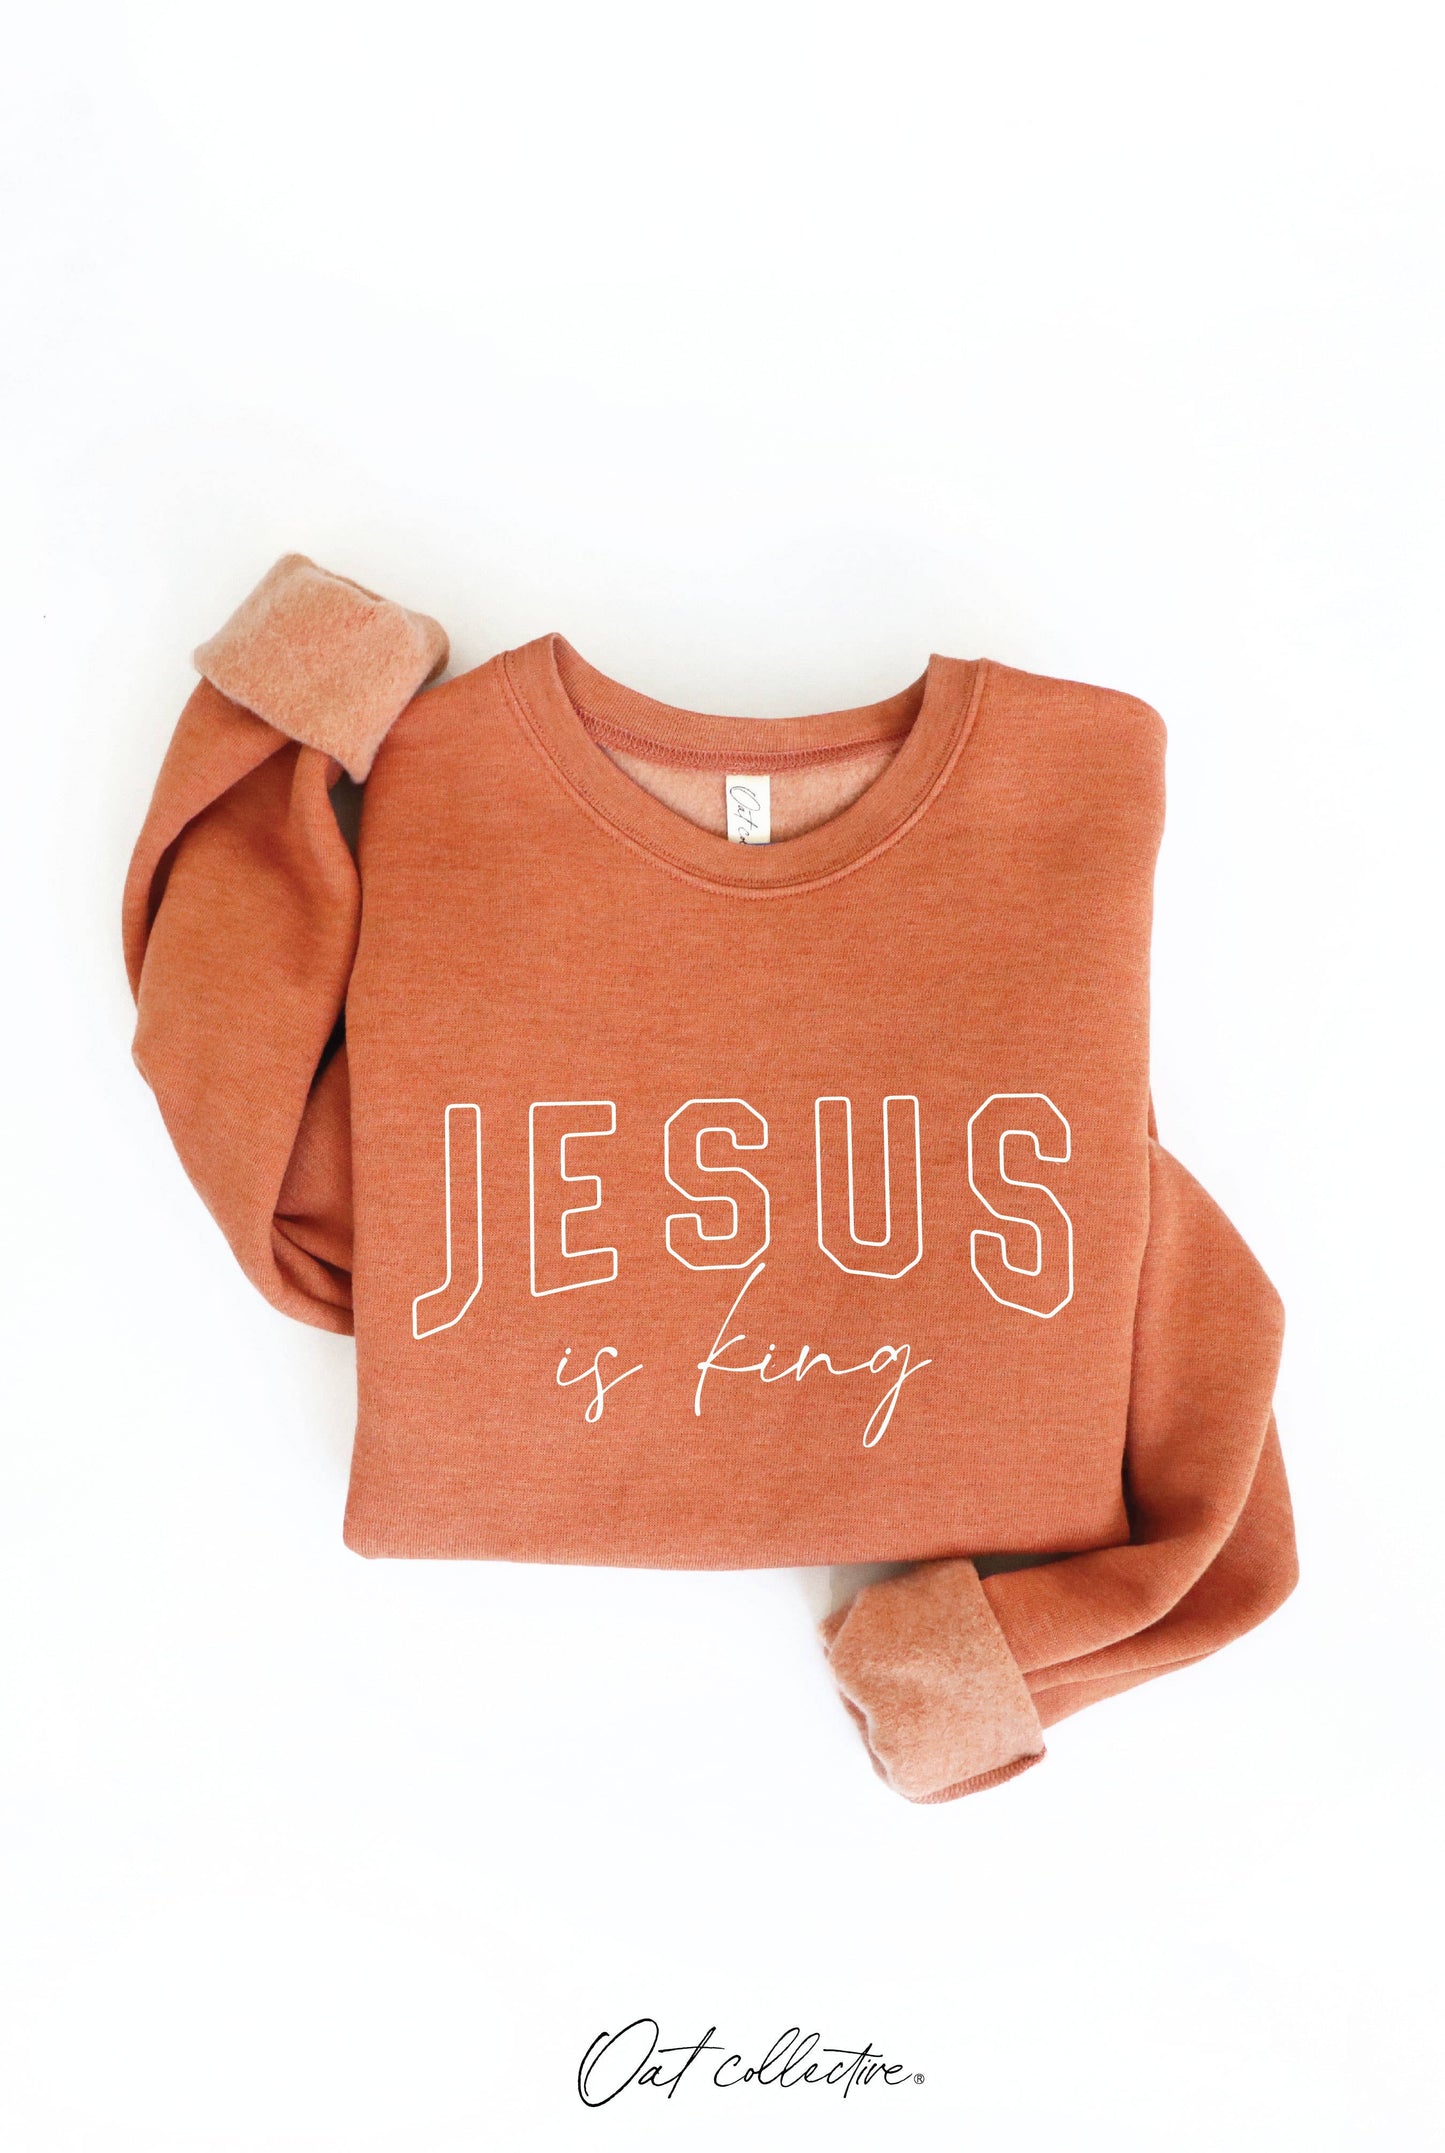 JESUS IS KING Graphic Sweatshirt